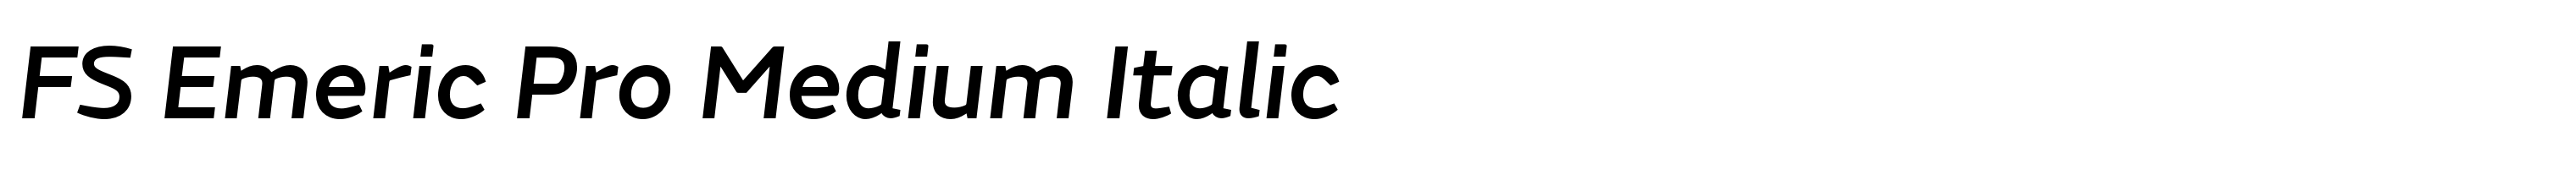 FS Emeric Pro Medium Italic